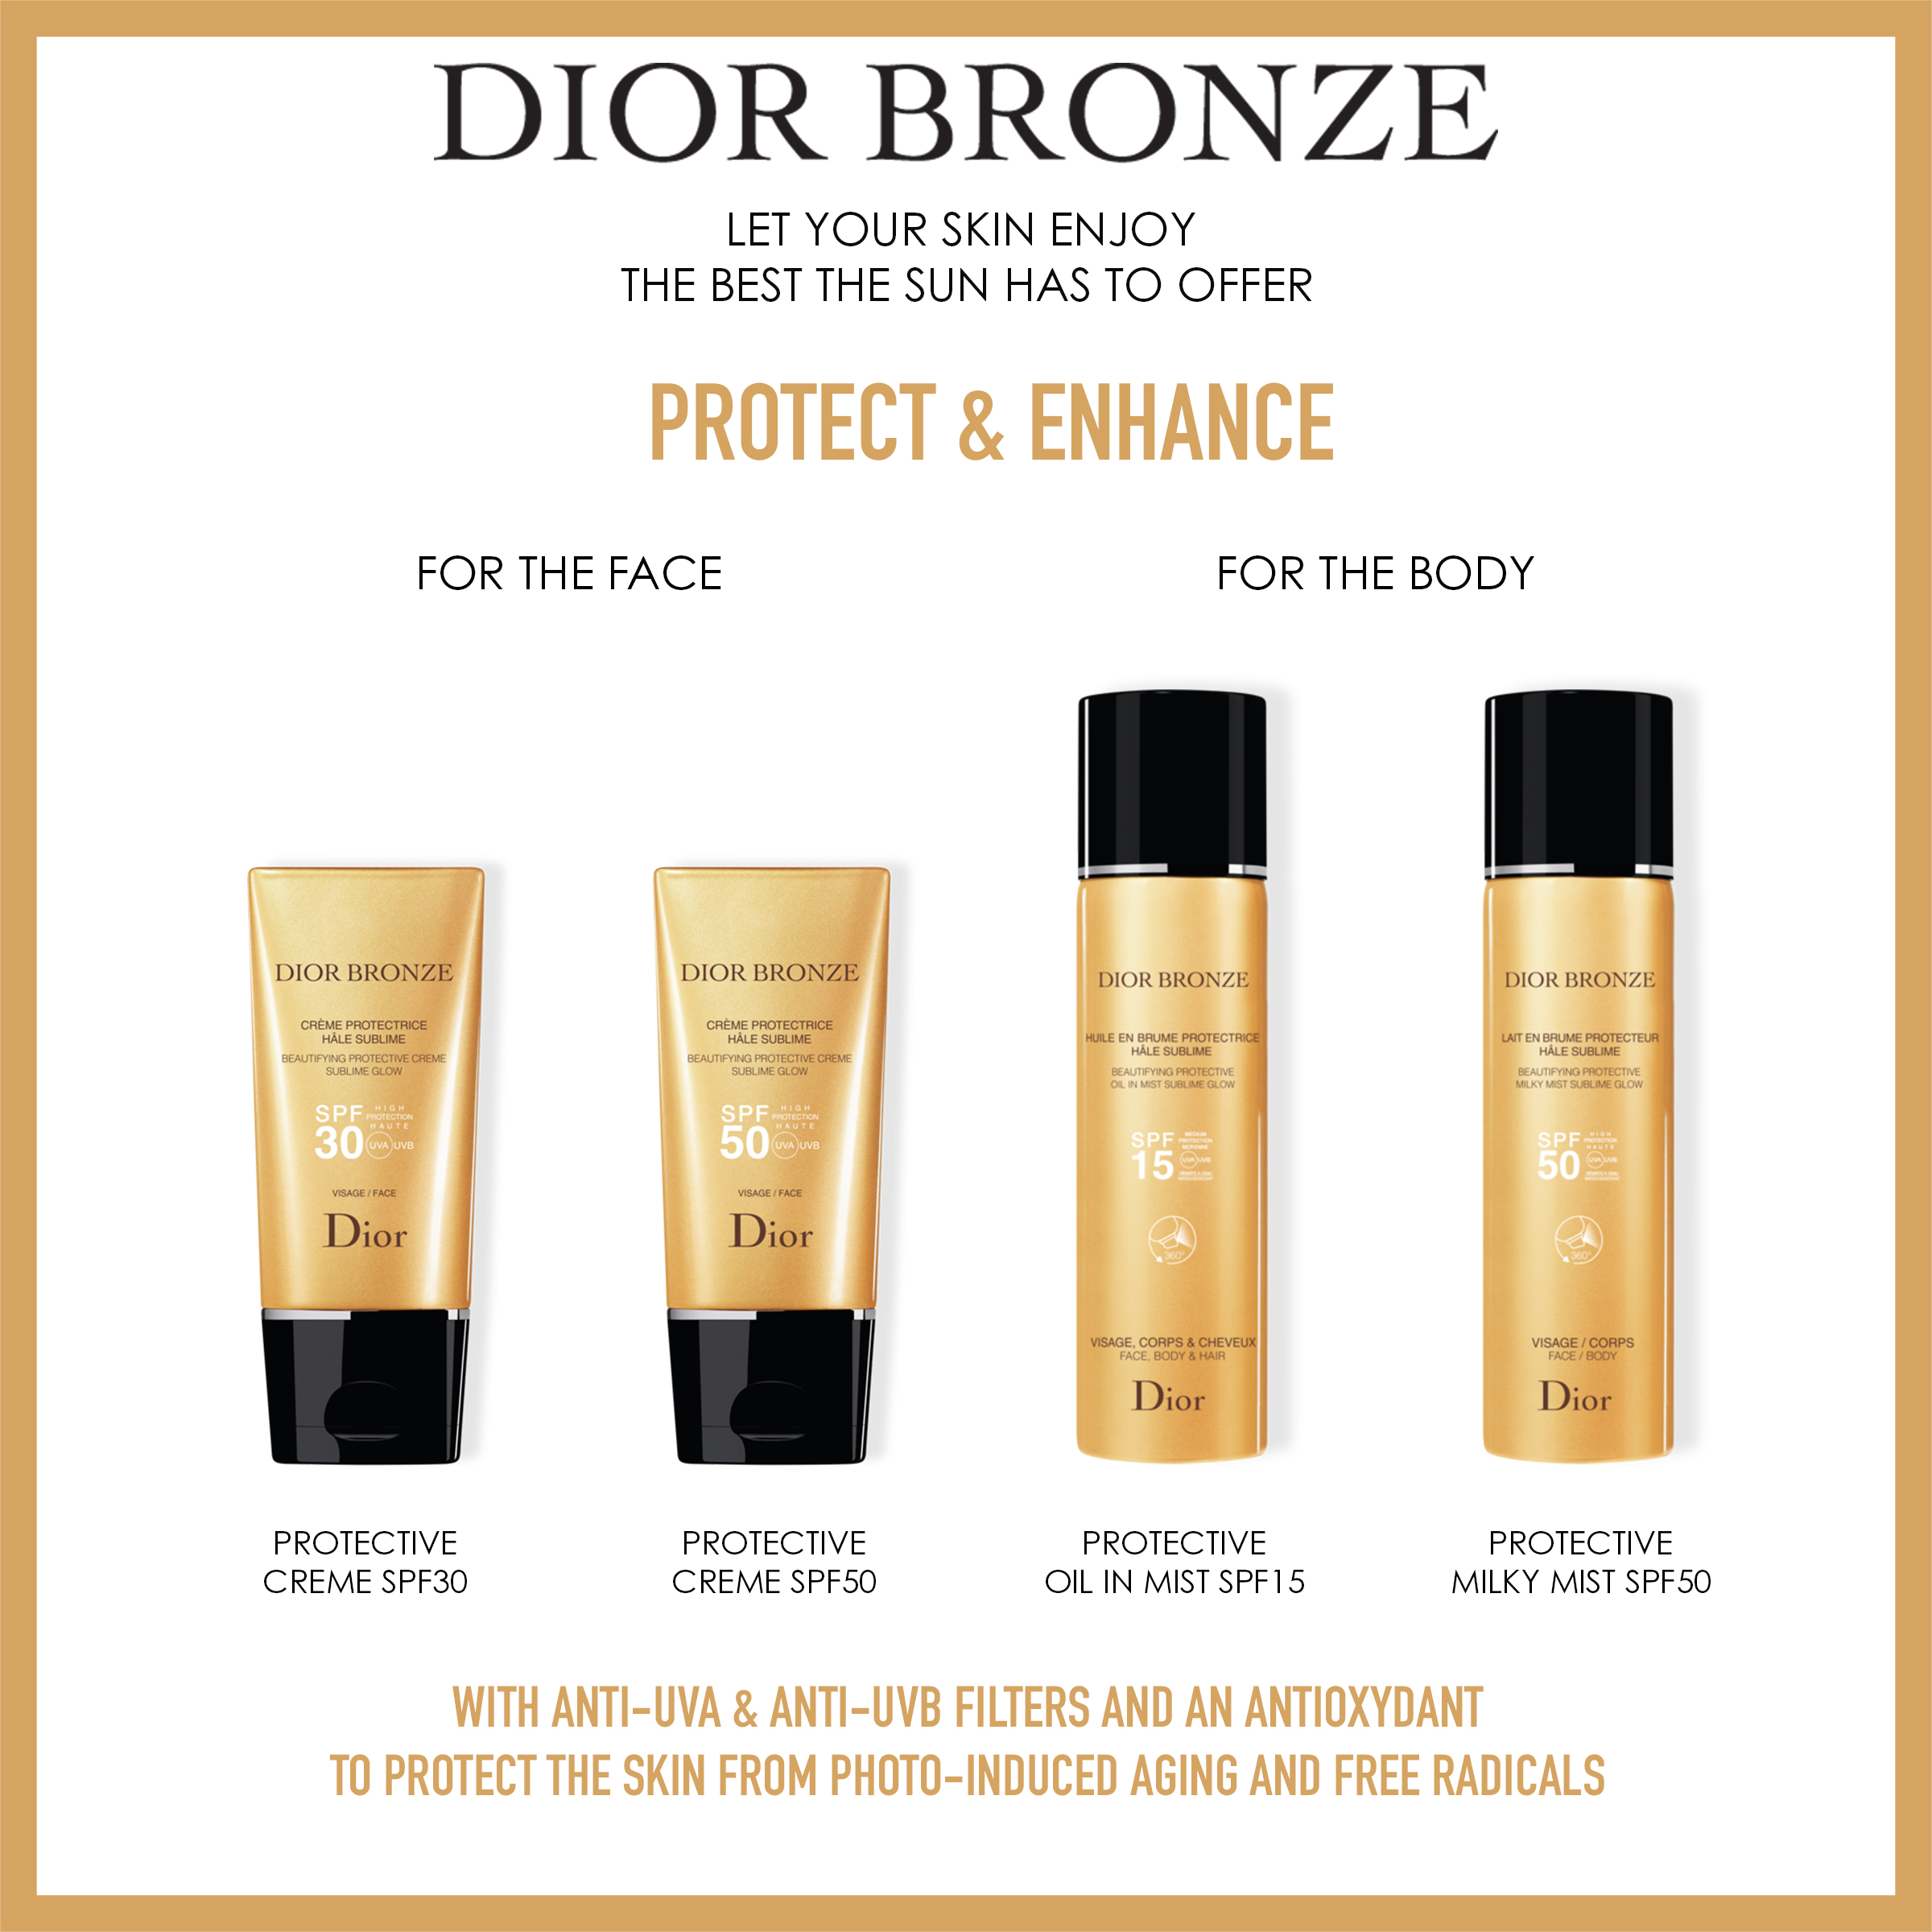  Dior Bronze Protective Creme Face